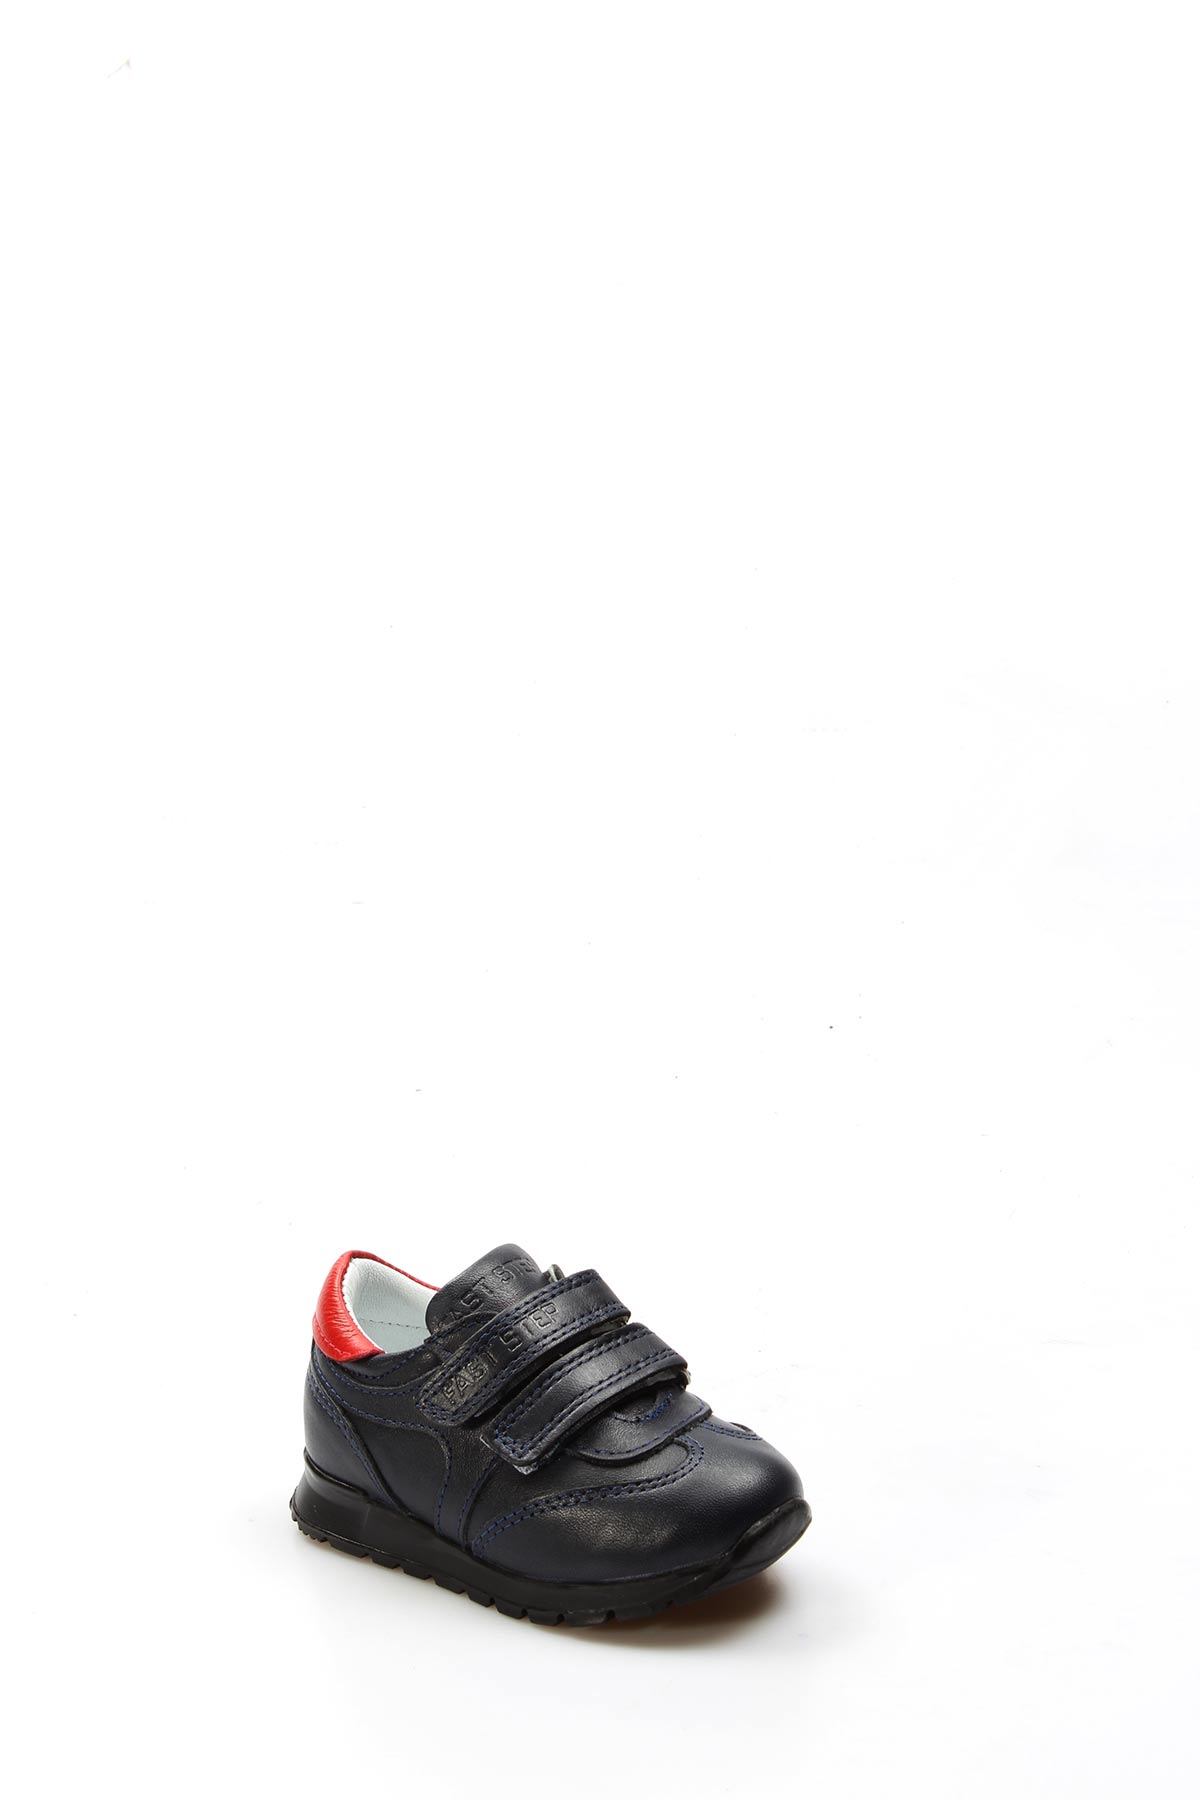 Fast Step Hakiki Deri Bebek Ayakkabı Kahverengi 006BA900